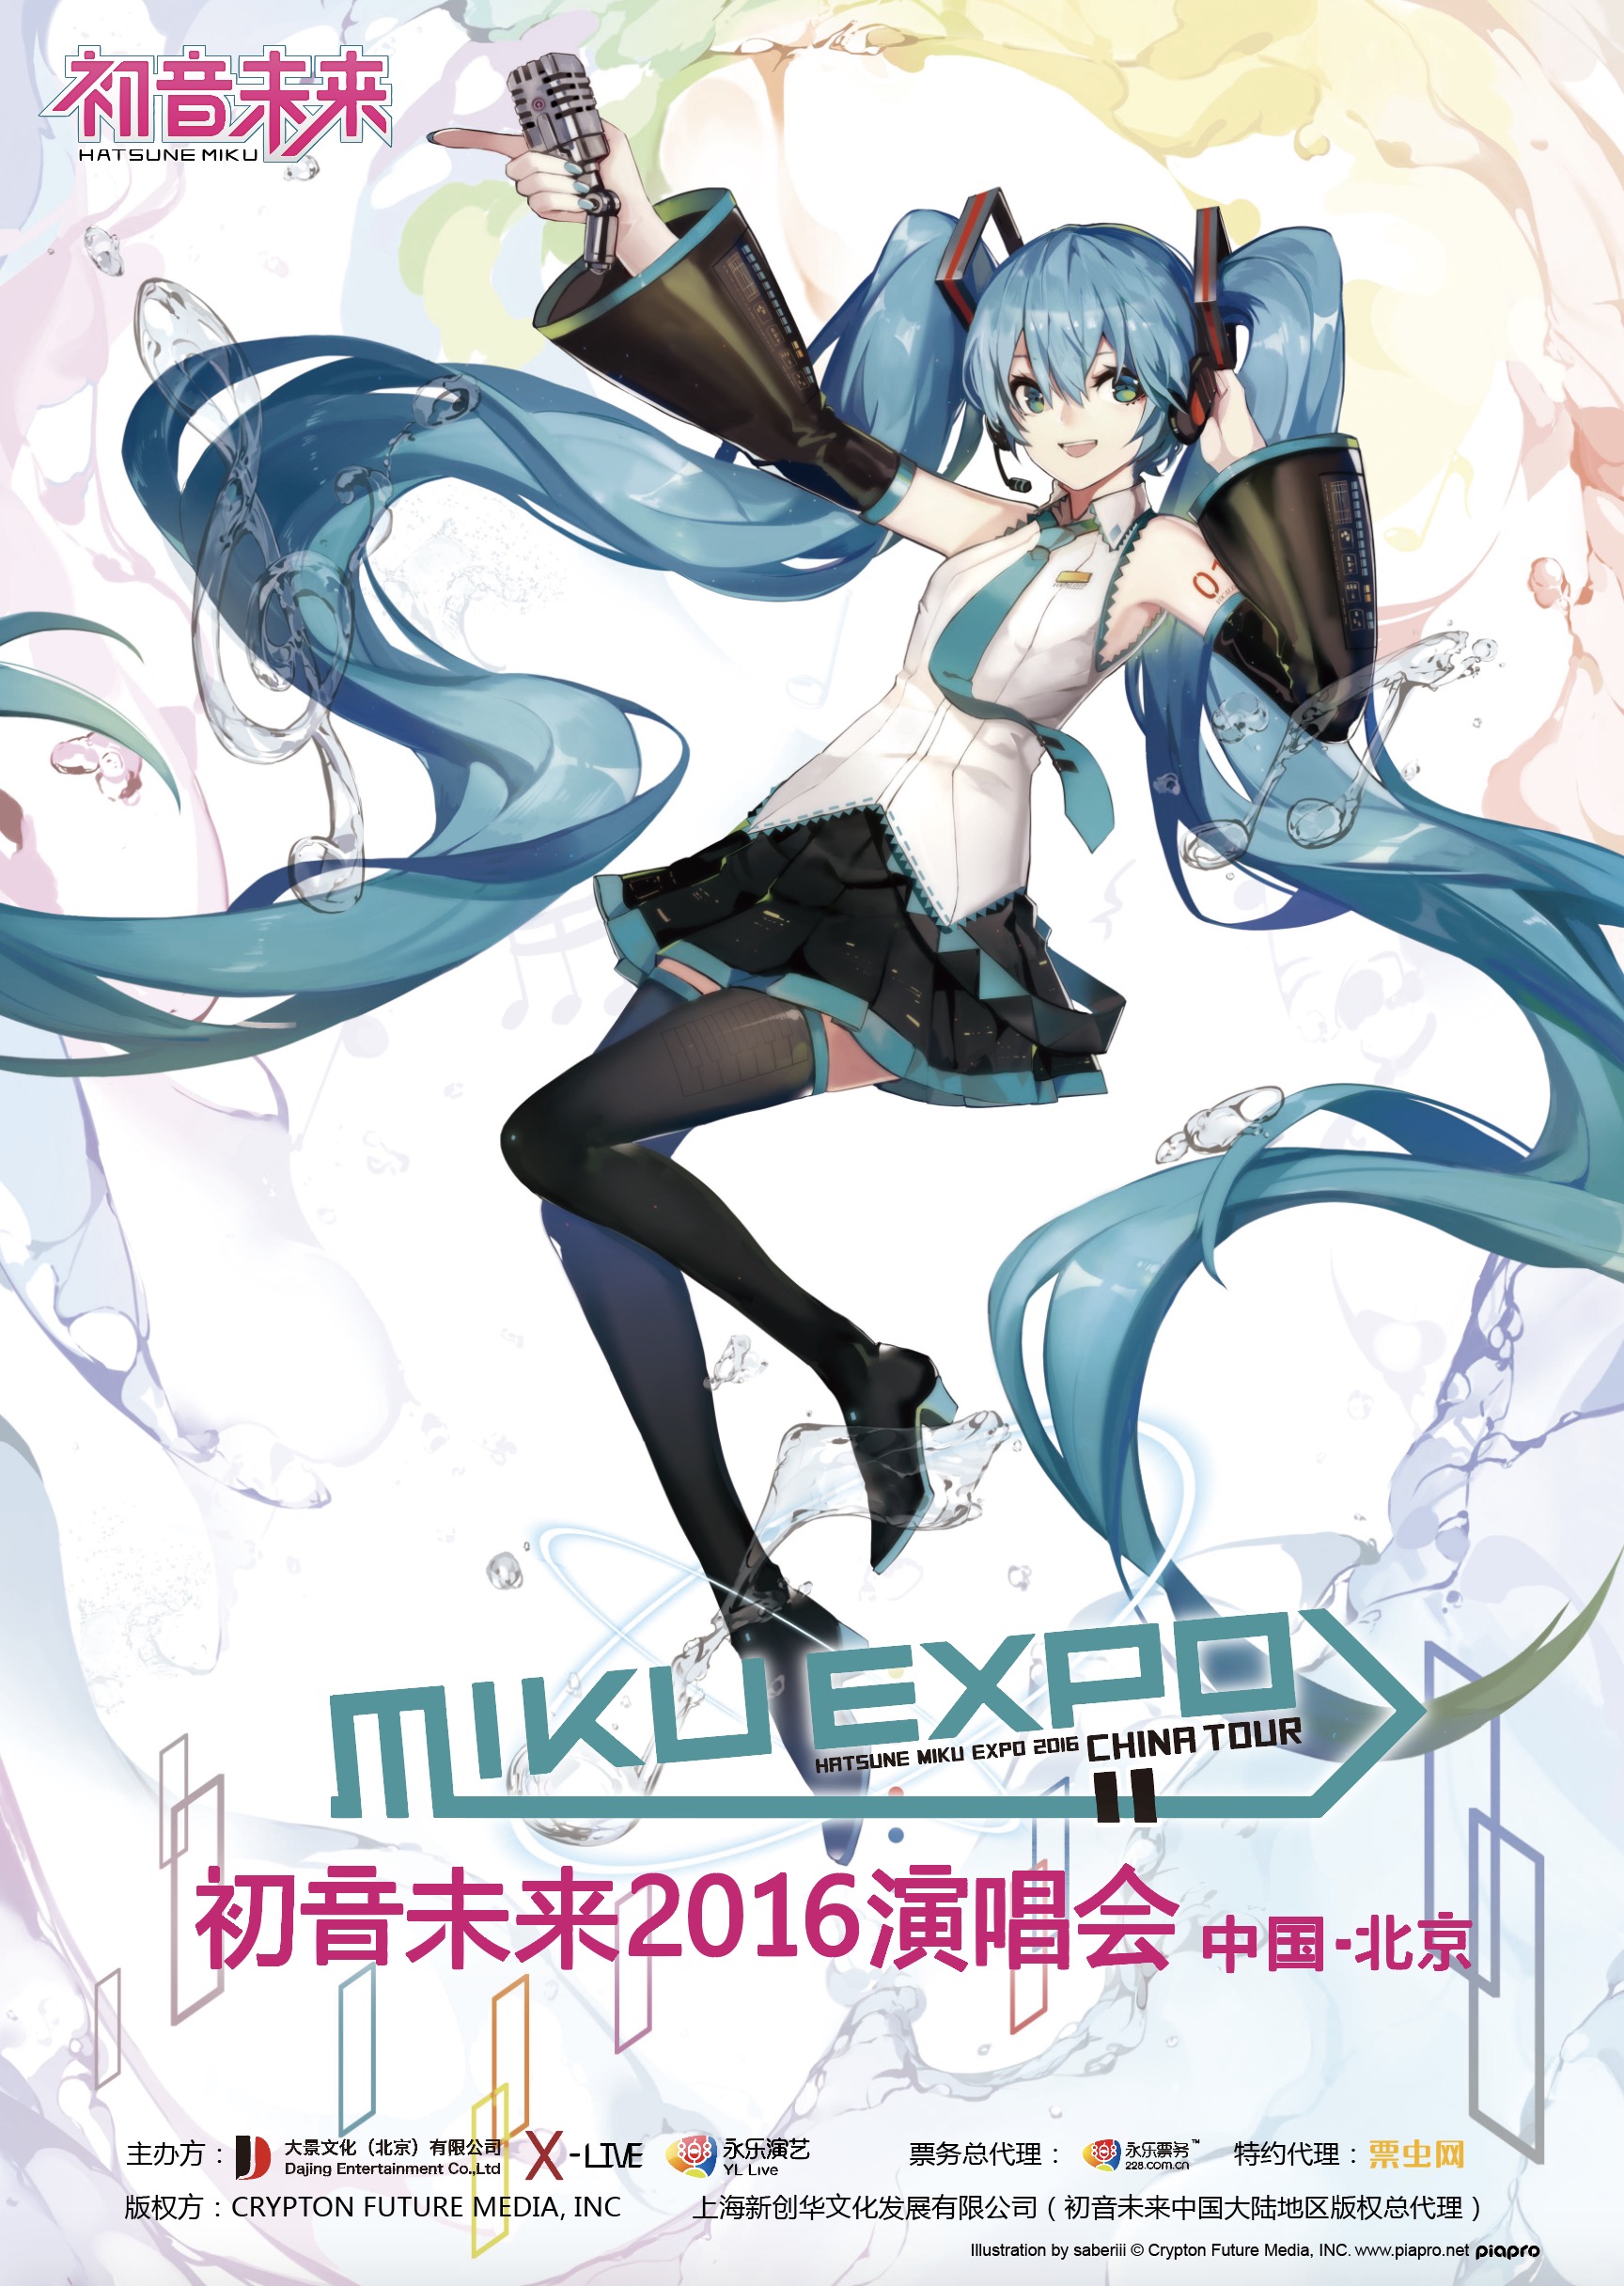 HATSUNE MIKU EXPO 2016 in Beijing poster.jpg